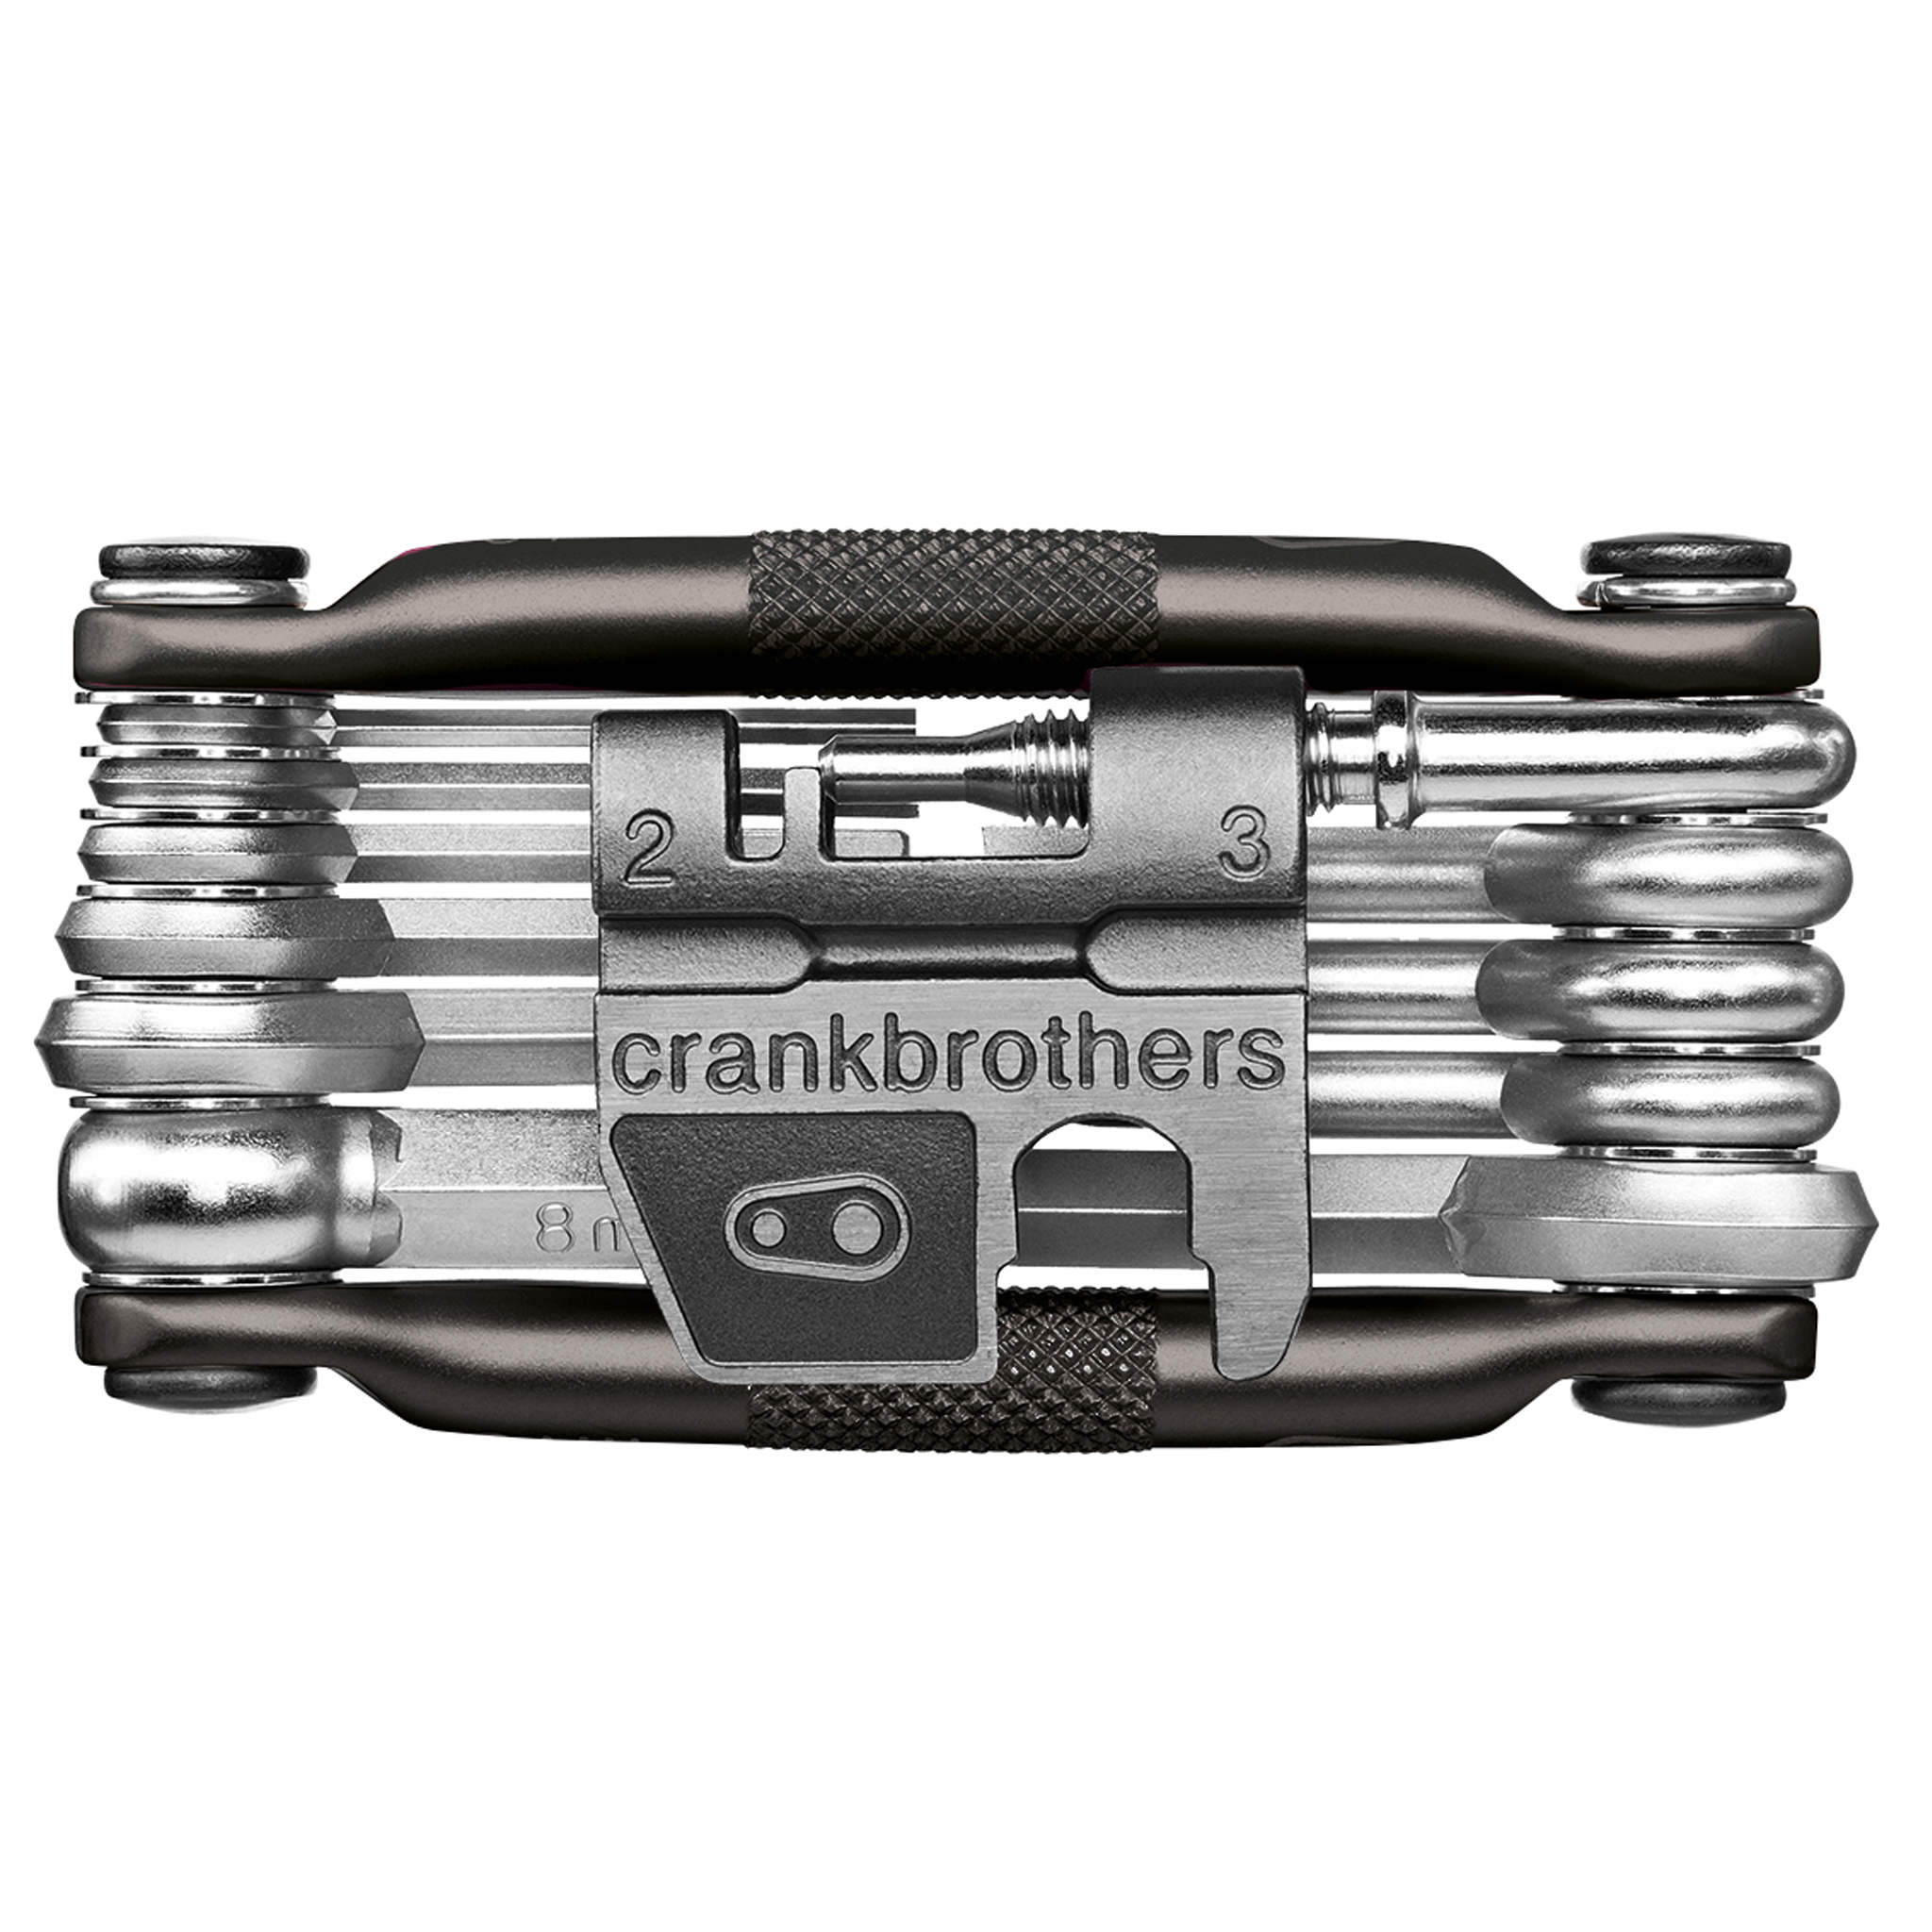 Crankbrothers Multi-17 Mini Tool, Midnight Edition